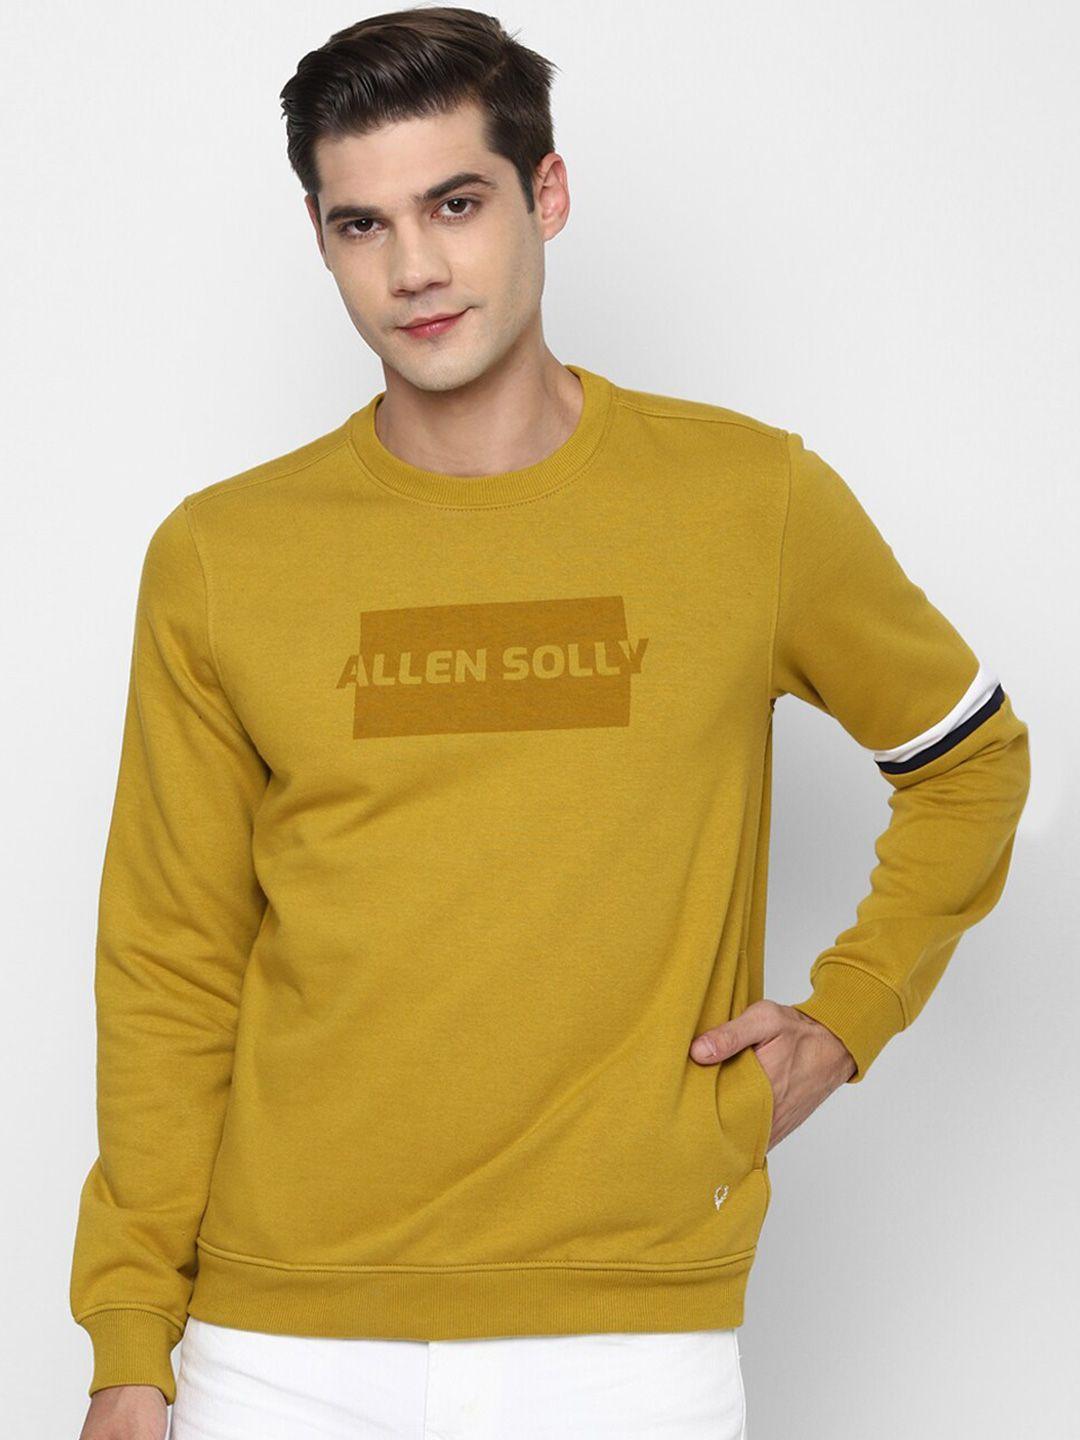 allen solly men yellow printed sweatshirt